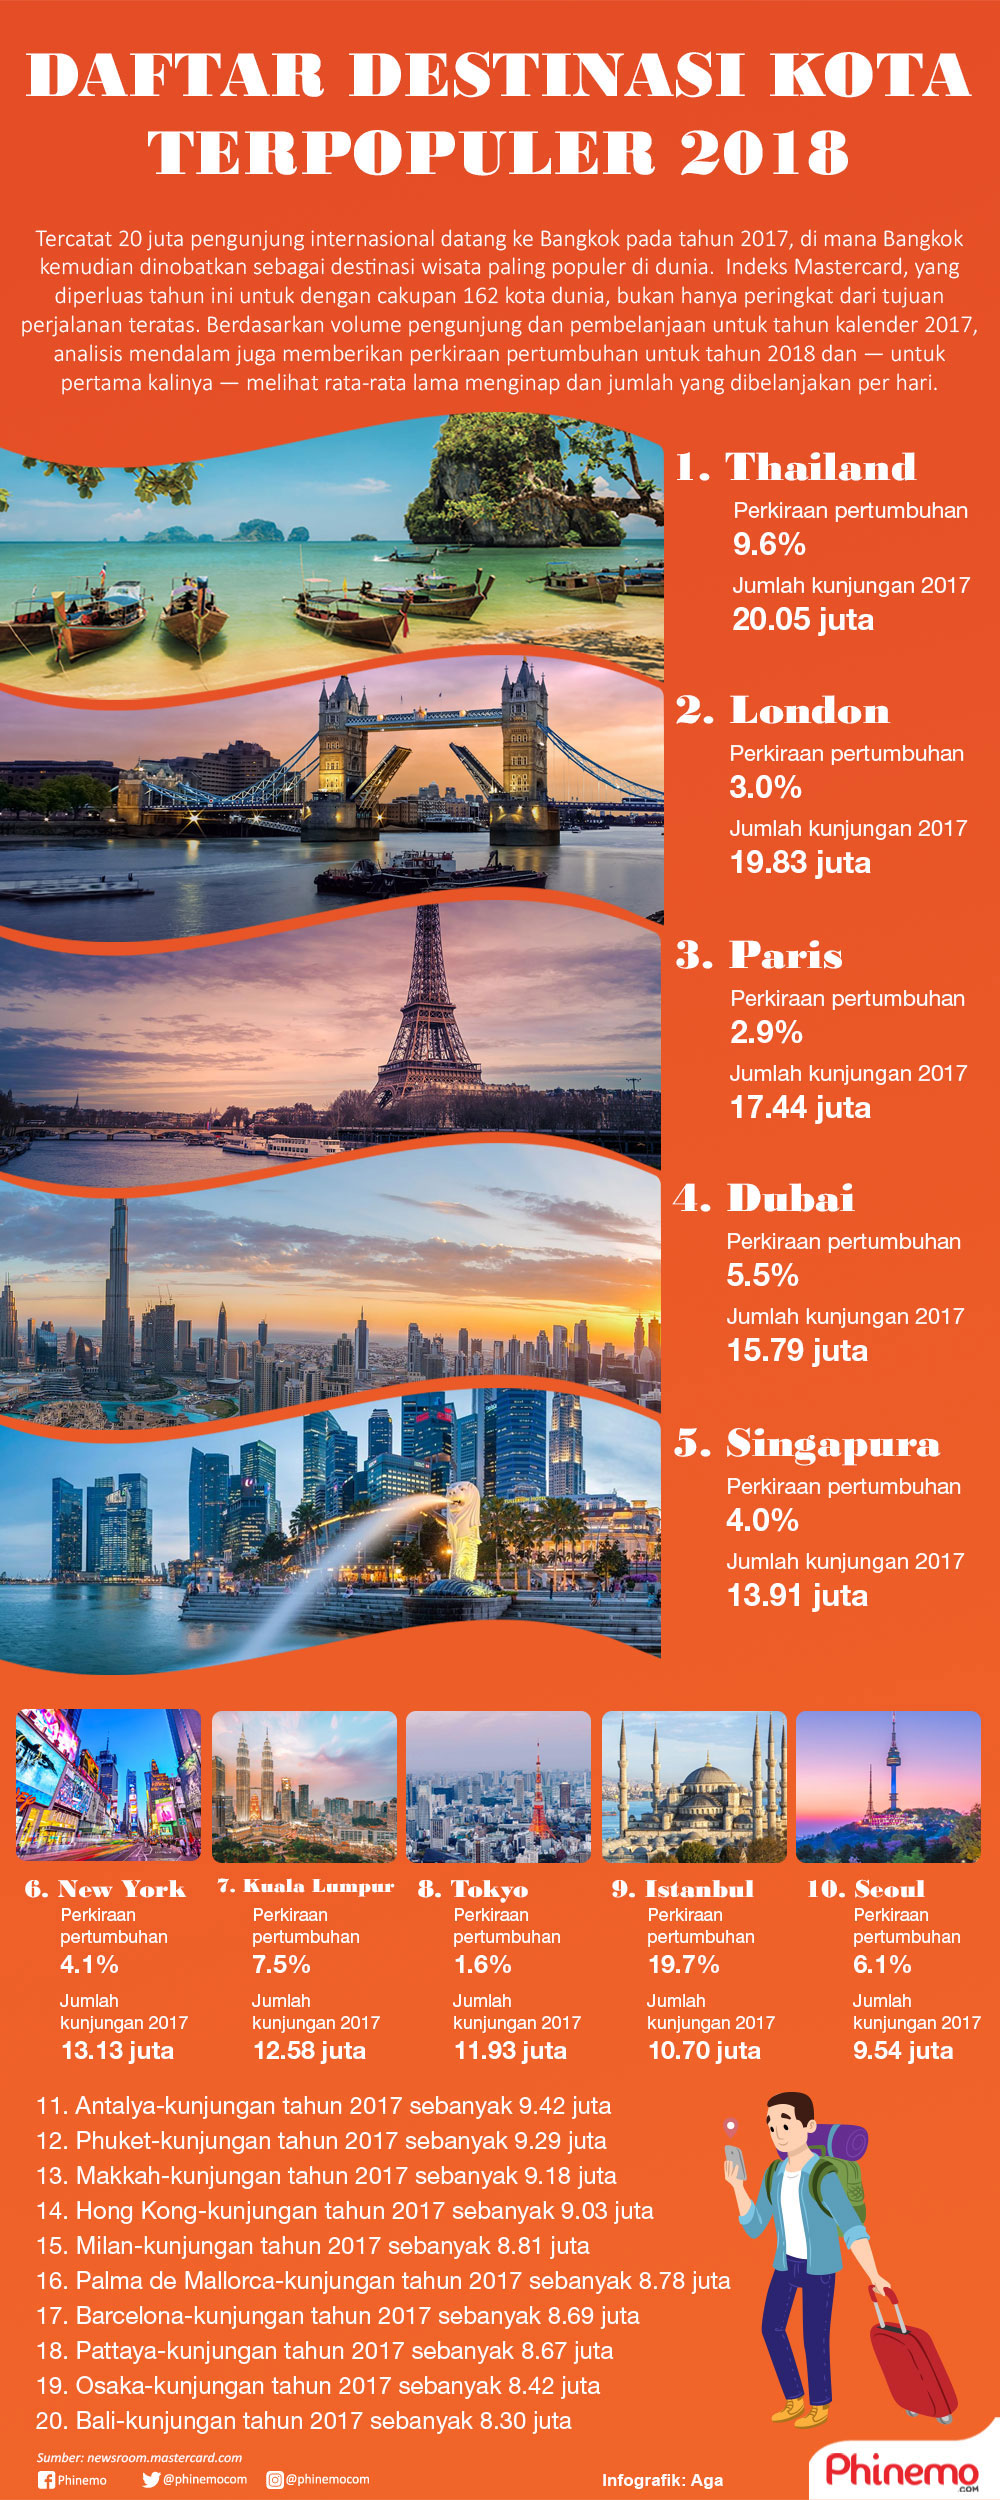 Infografik Indonesia Masuk 20 Besar Destinasi Populer 2018, Berikut Daftarnya.